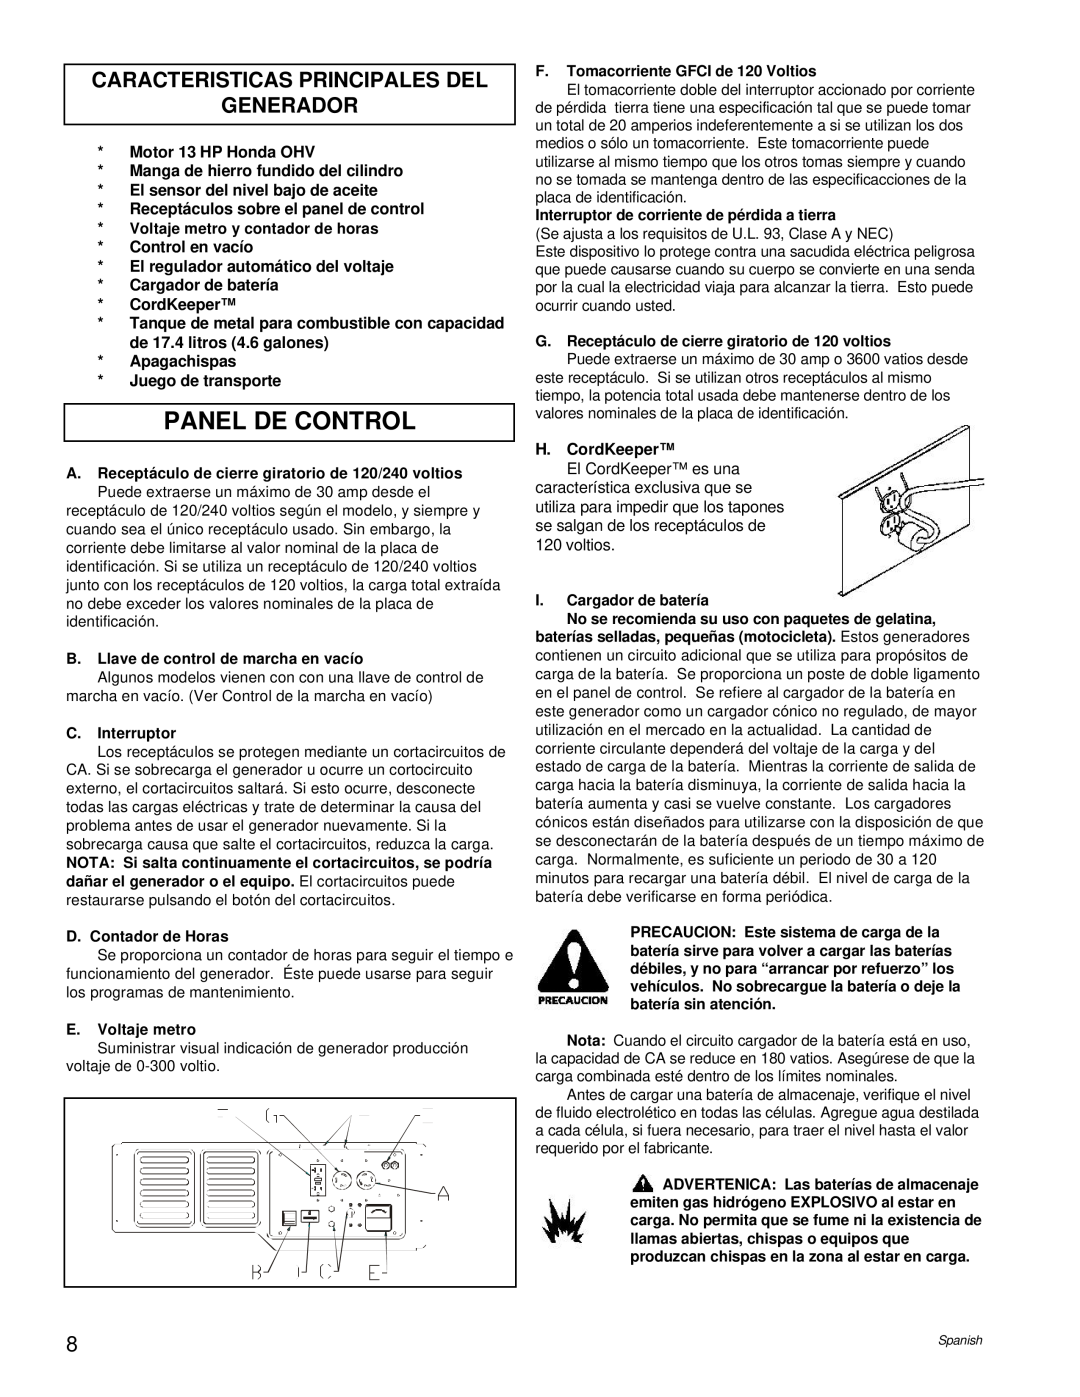 Powermate PC0496504.18 manual Panel De Control, Caracteristicas Principales Del Generador 